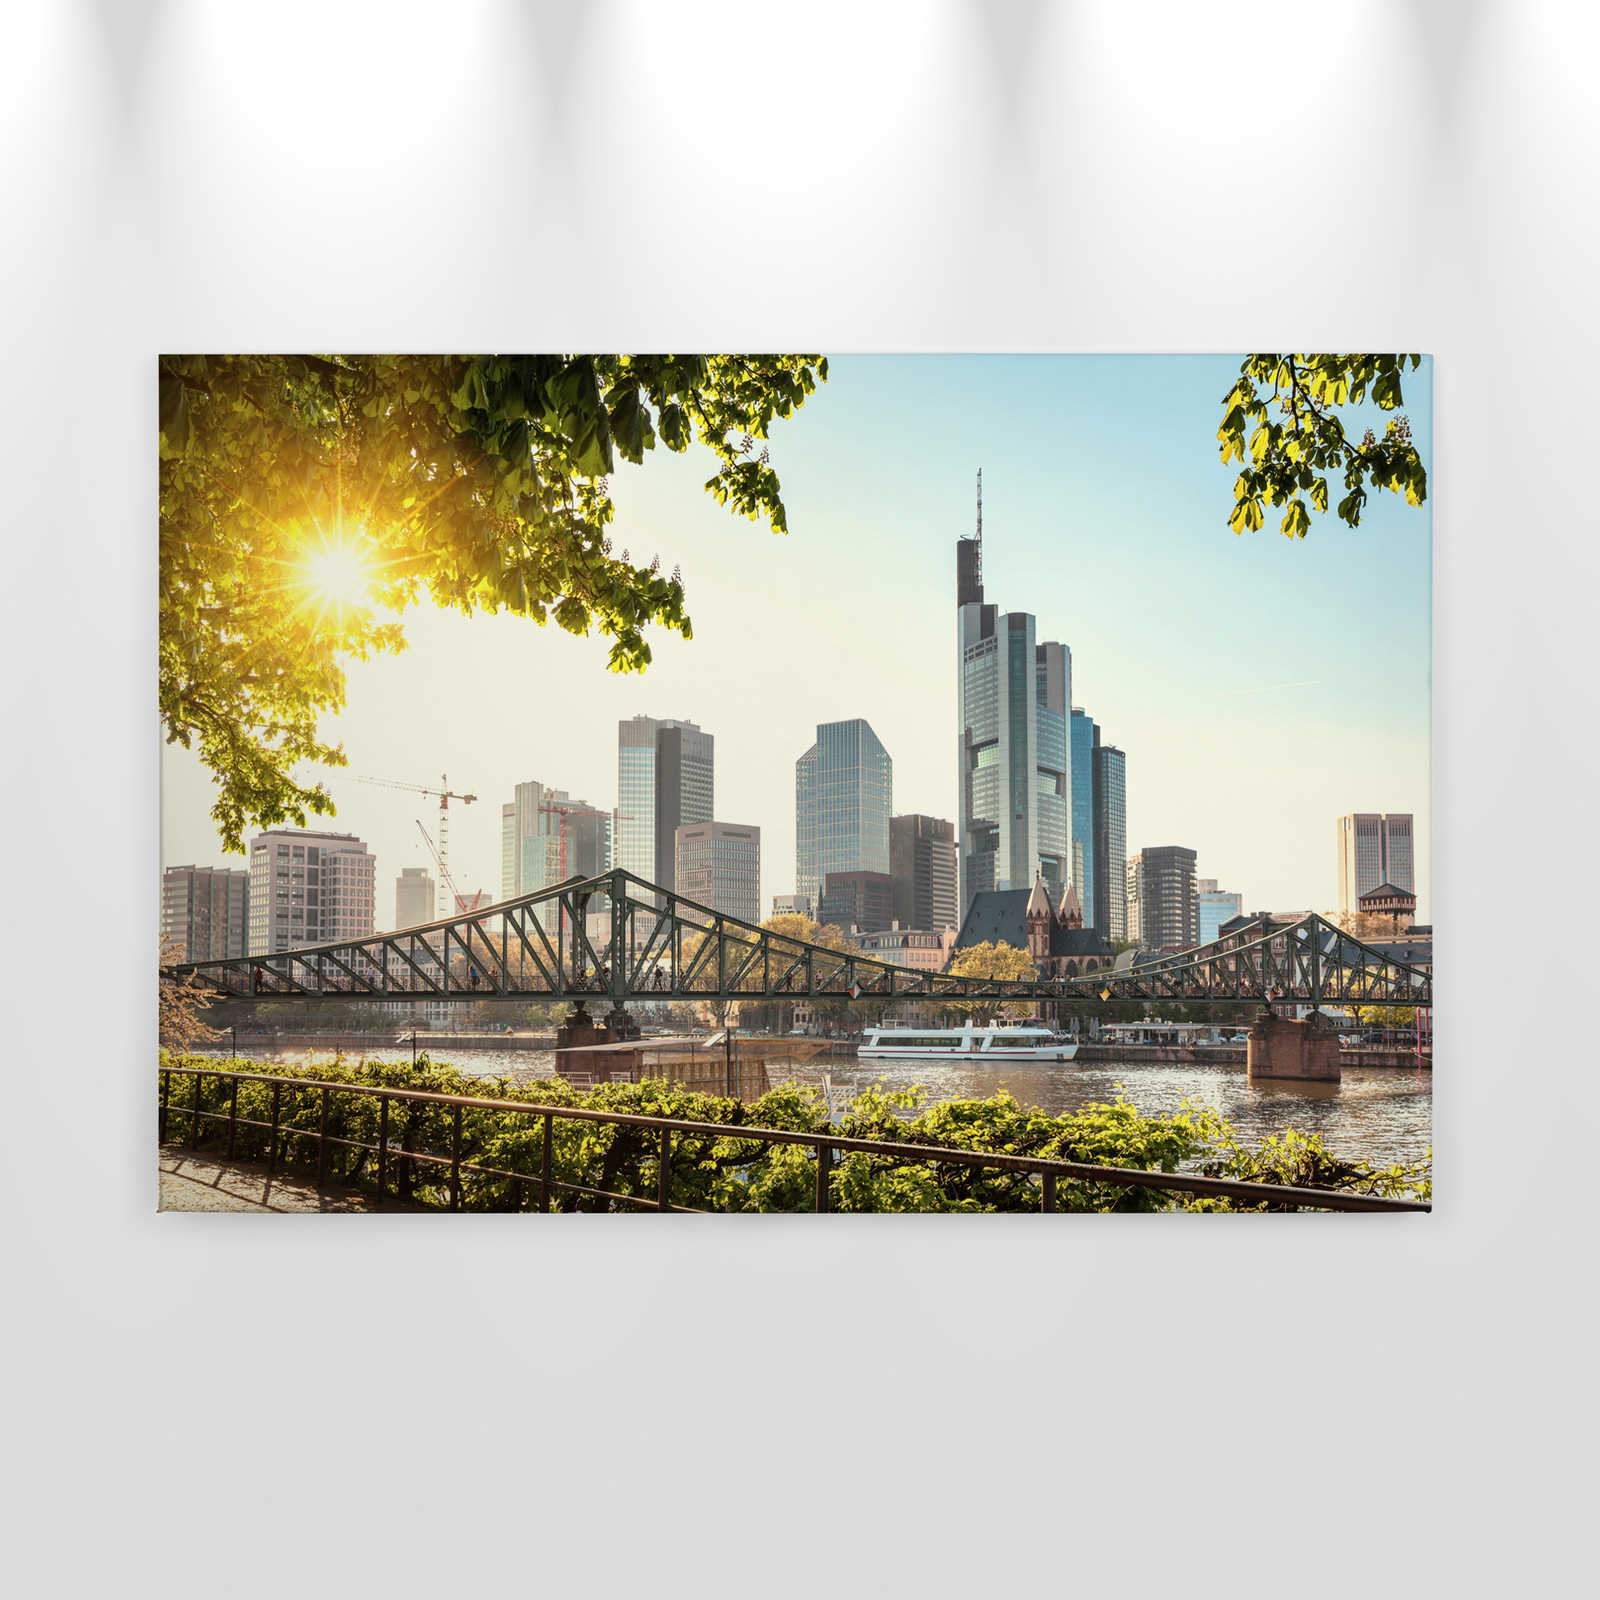             Leinwand mit Frankfurt Skyline – 0,90 m x 0,60 m
        